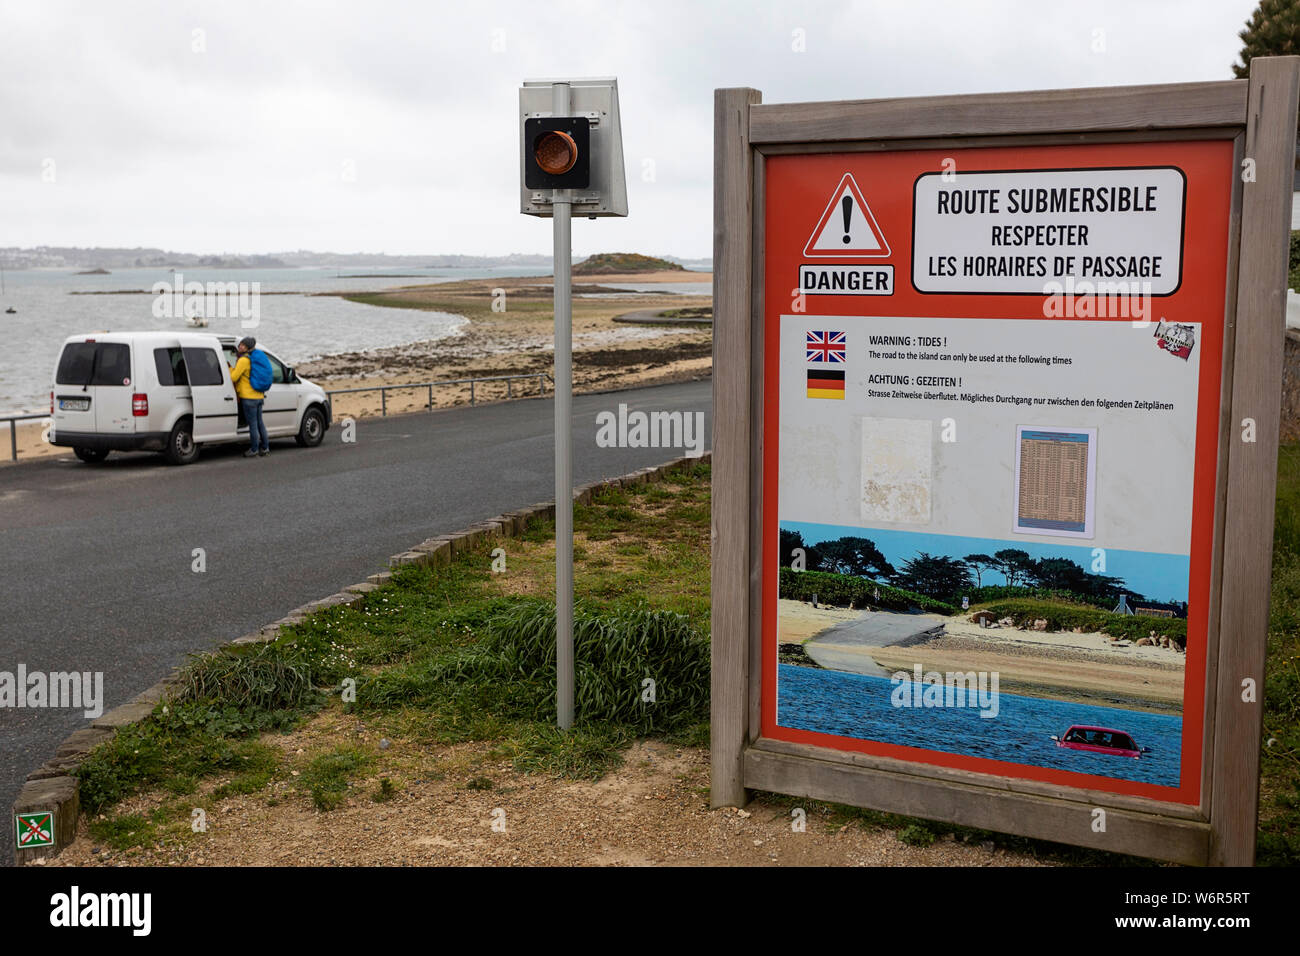 Une voiture garée sur la route submersible panneau d'avertissement indiquant que la route est passible d'fllooding à marée haute, Bretagne, France Banque D'Images